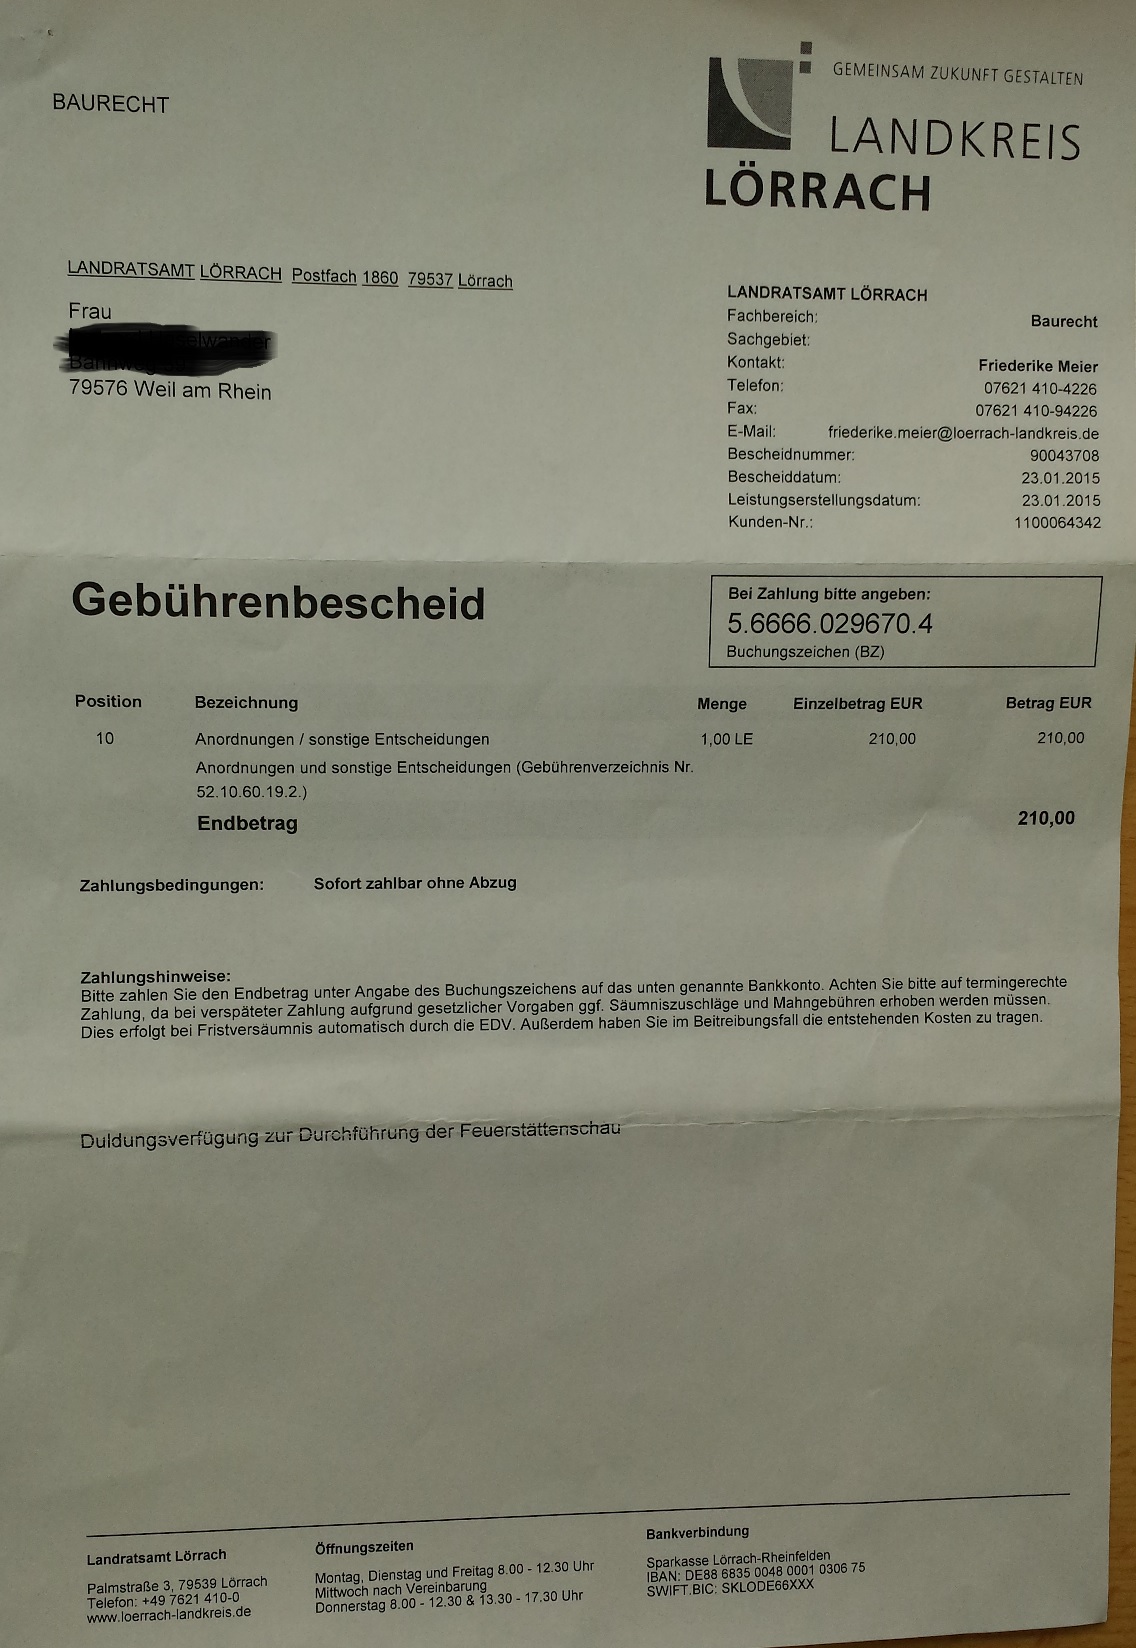 LRAL Baurecht Anschreiben Friederike Meier 20150123 p4